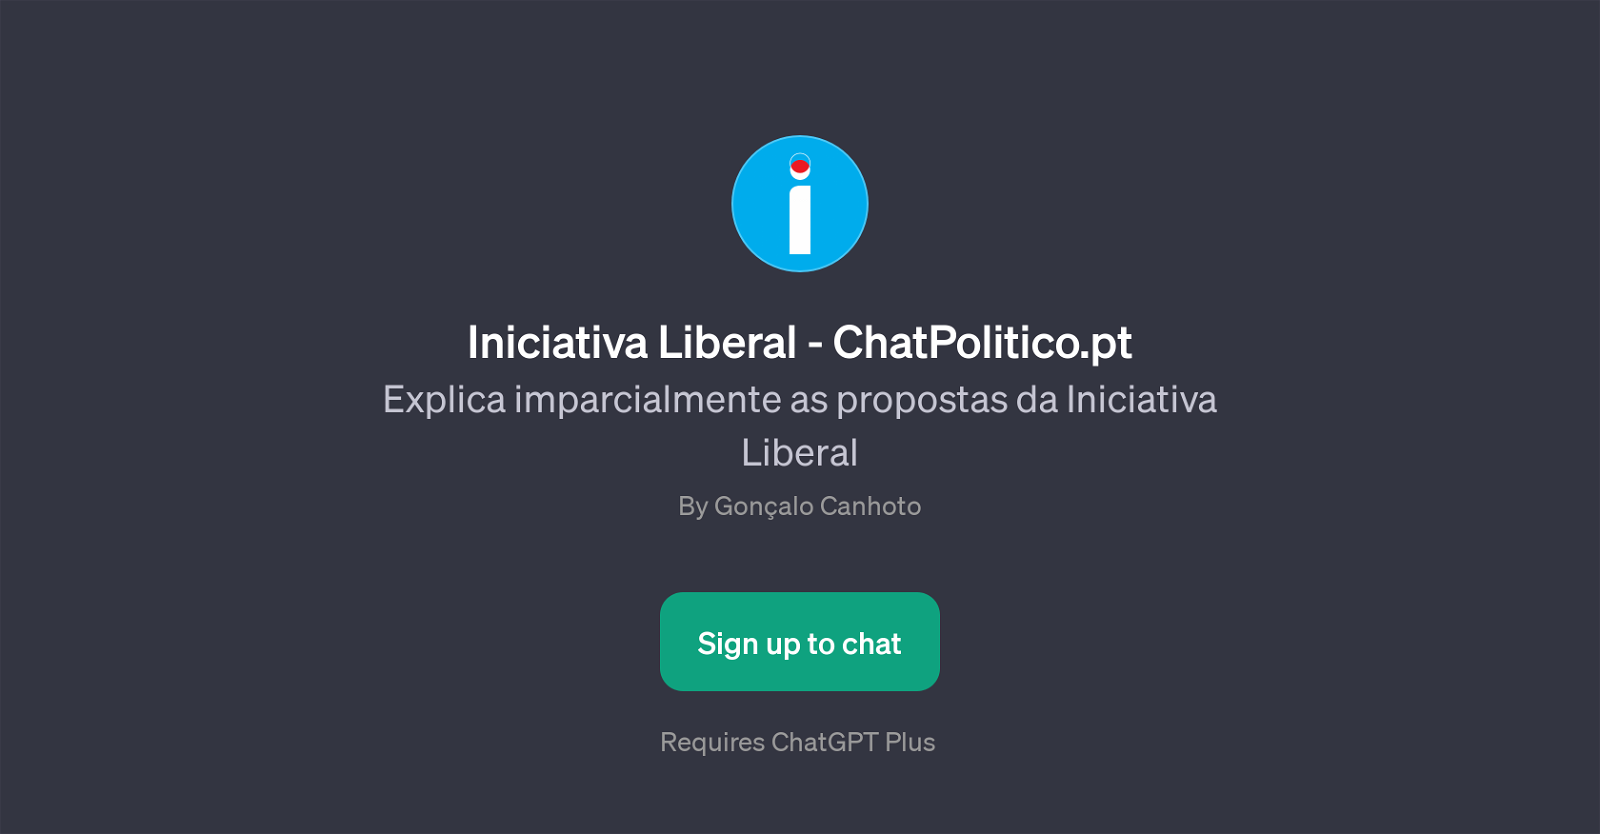 Iniciativa Liberal - ChatPolitico.pt website